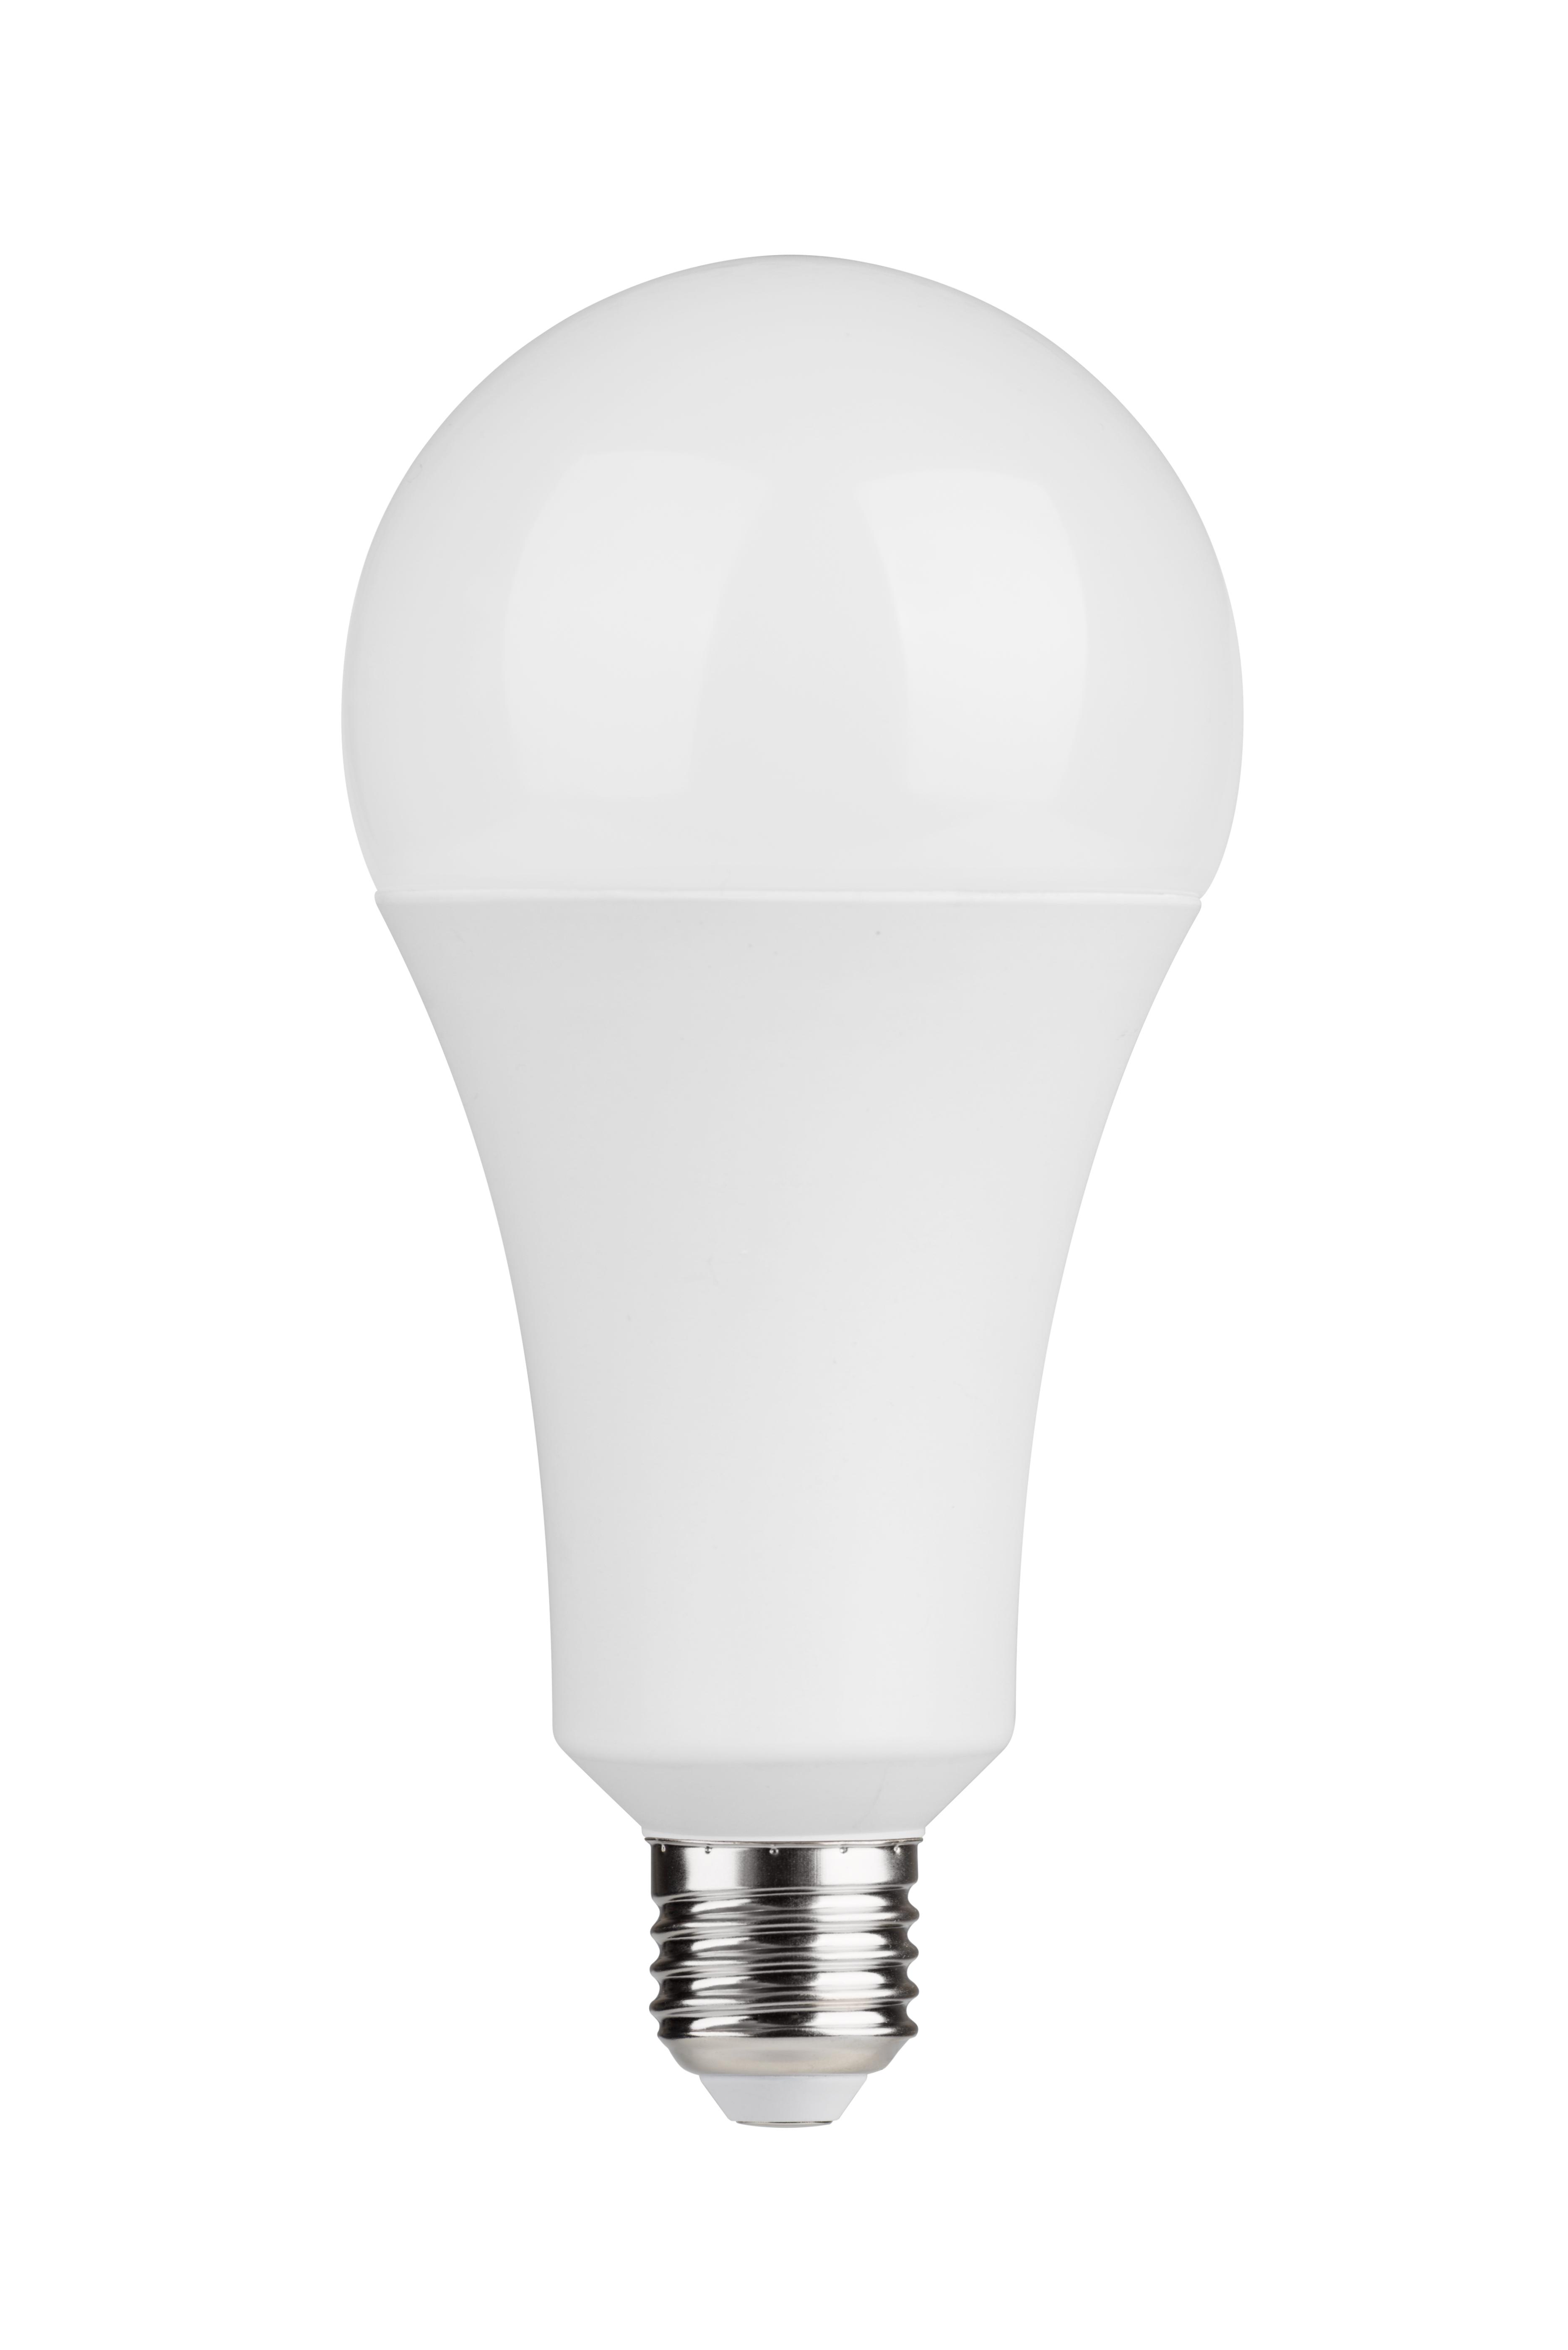 LUMAX LED žárovka E27 A90 28W 3450lm Studená bílá 865 200°